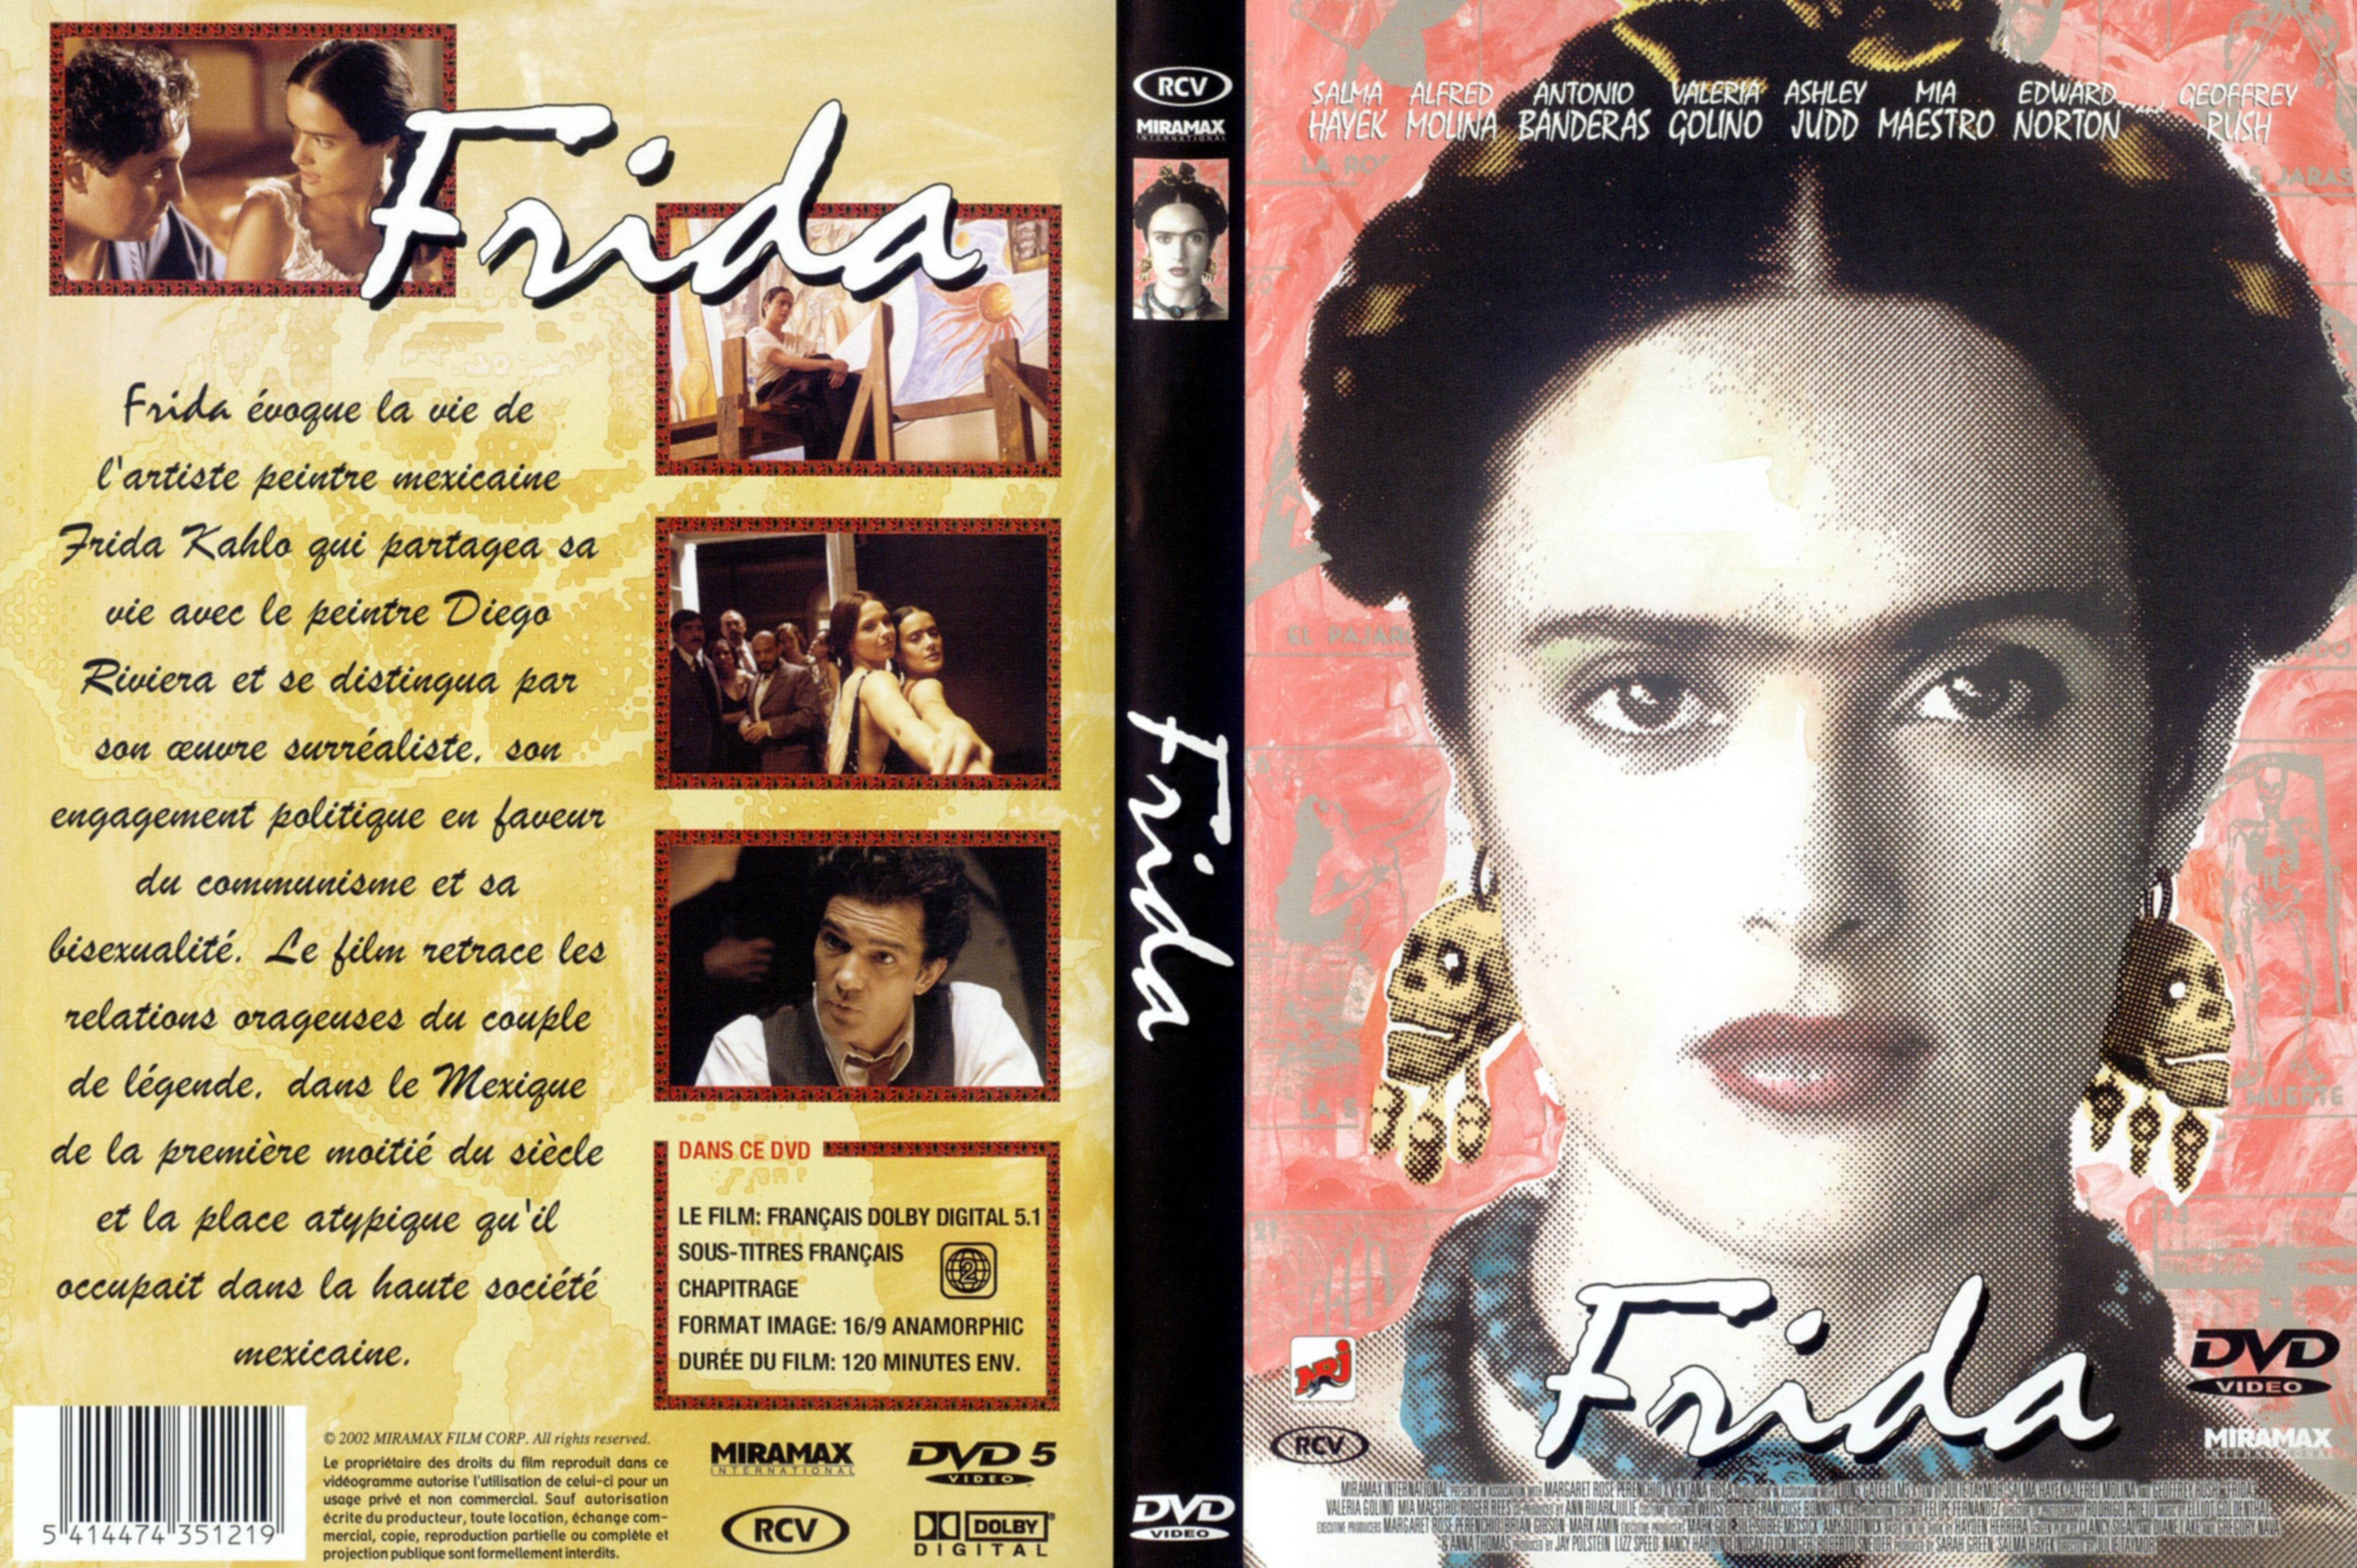 Jaquette DVD Frida v2